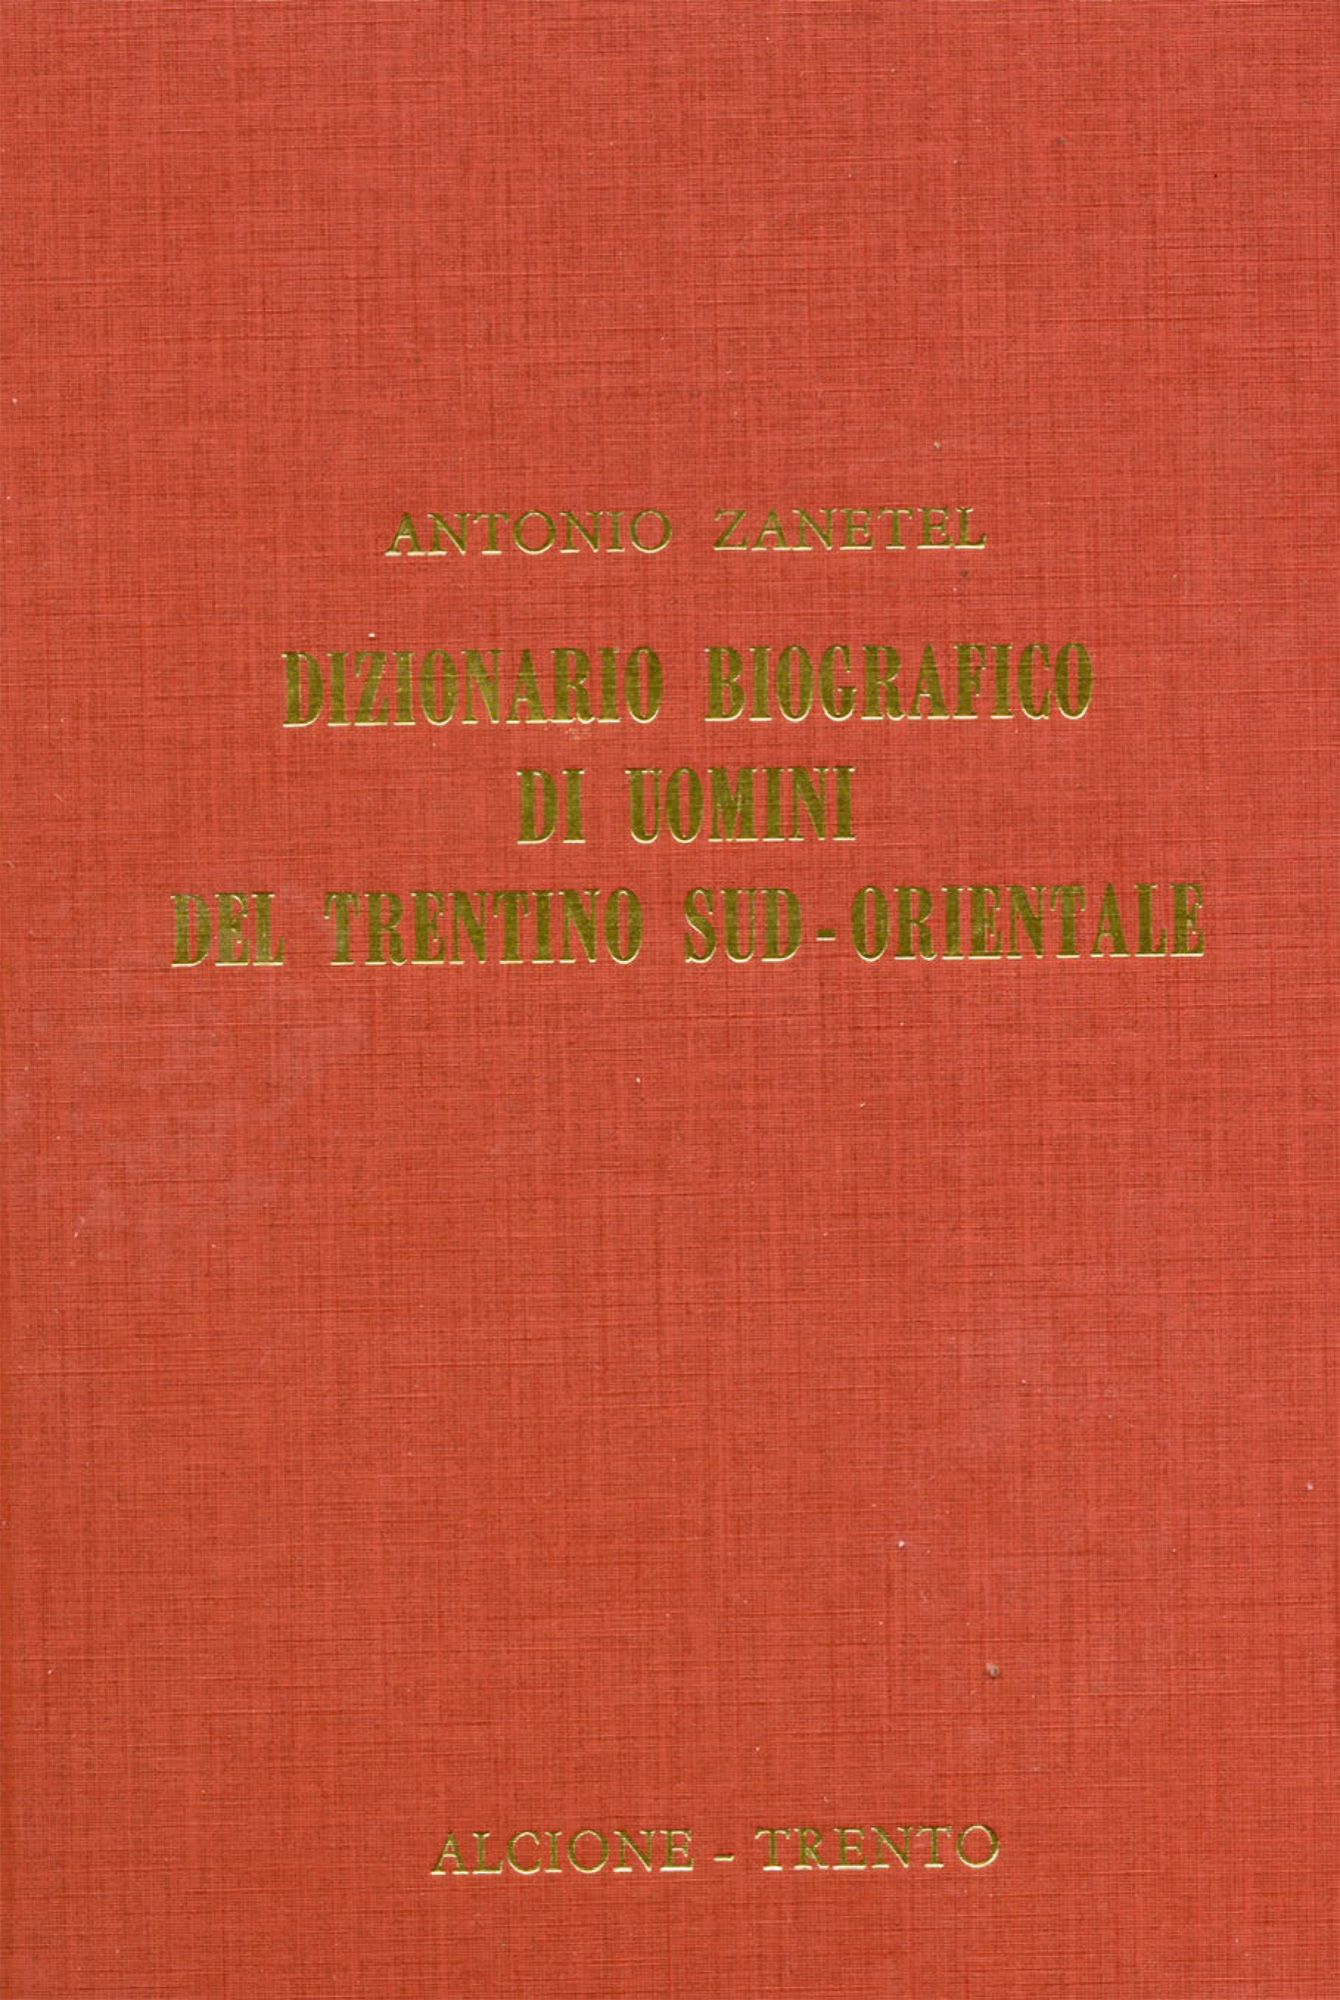 Dizionario biografico di uomini del Trentino sud-orientale